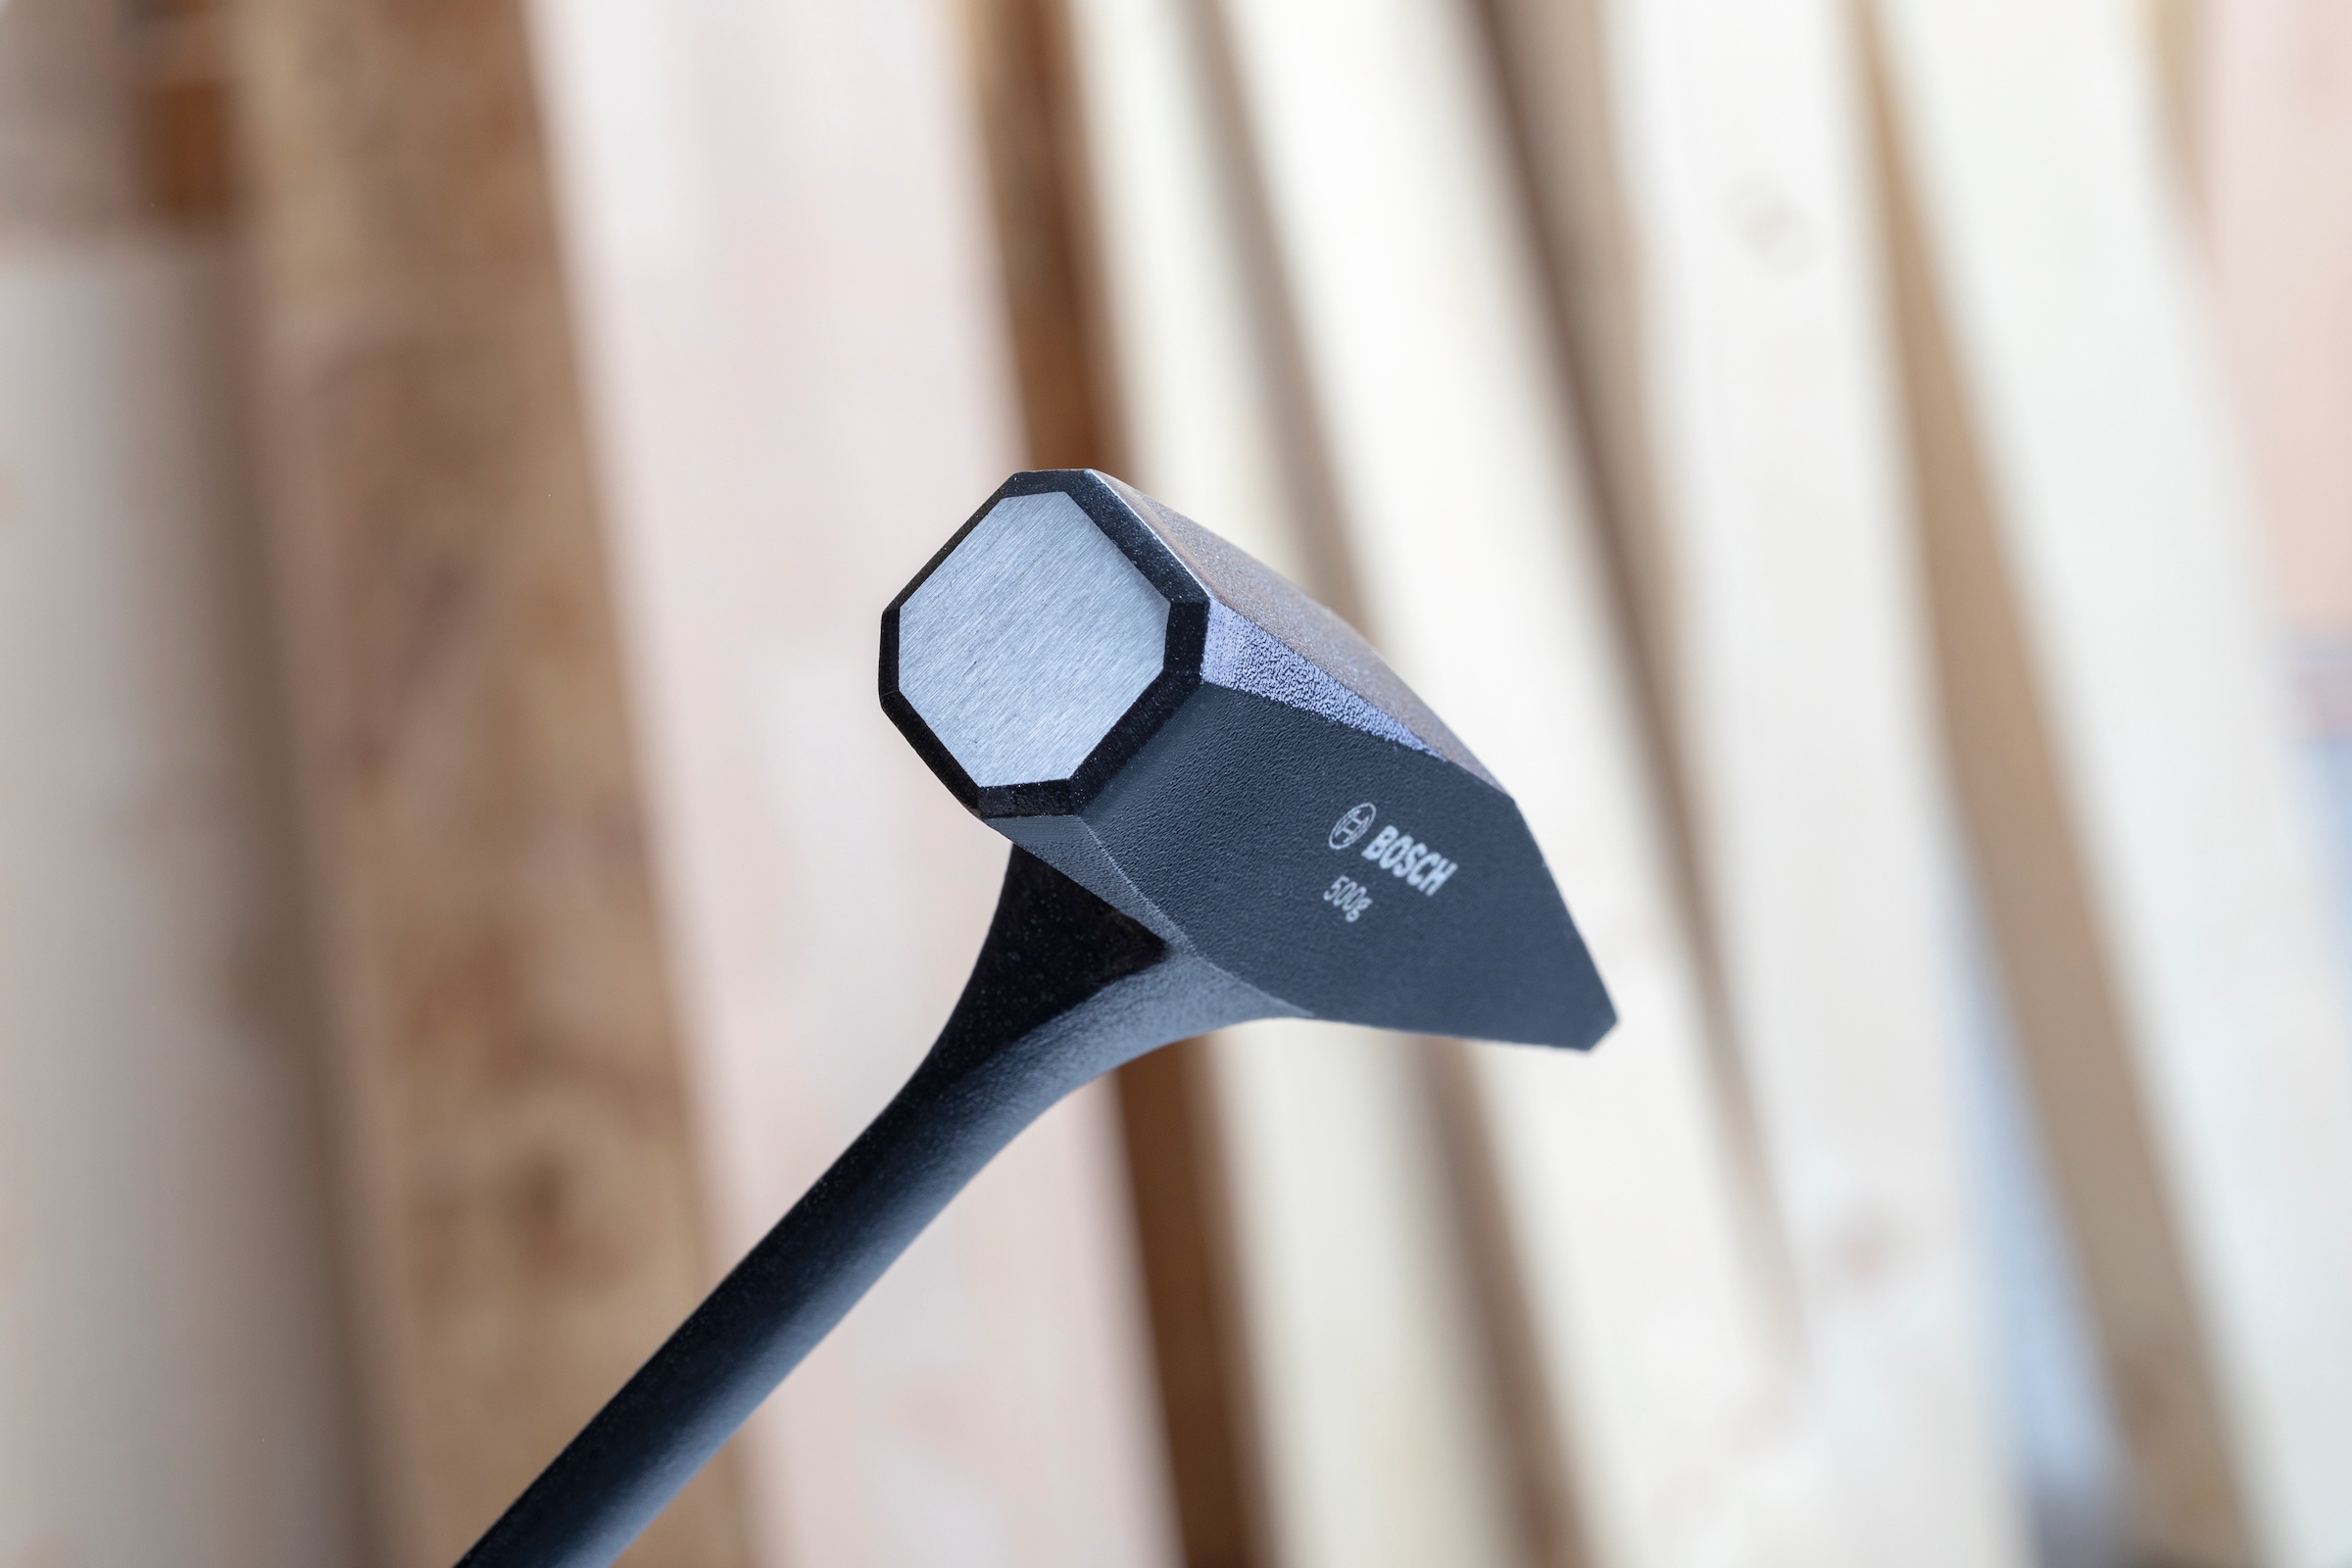 Bosch Professional Hammer »(1600A016LL)«, 500 g online kaufen | mit 3  Jahren XXL Garantie